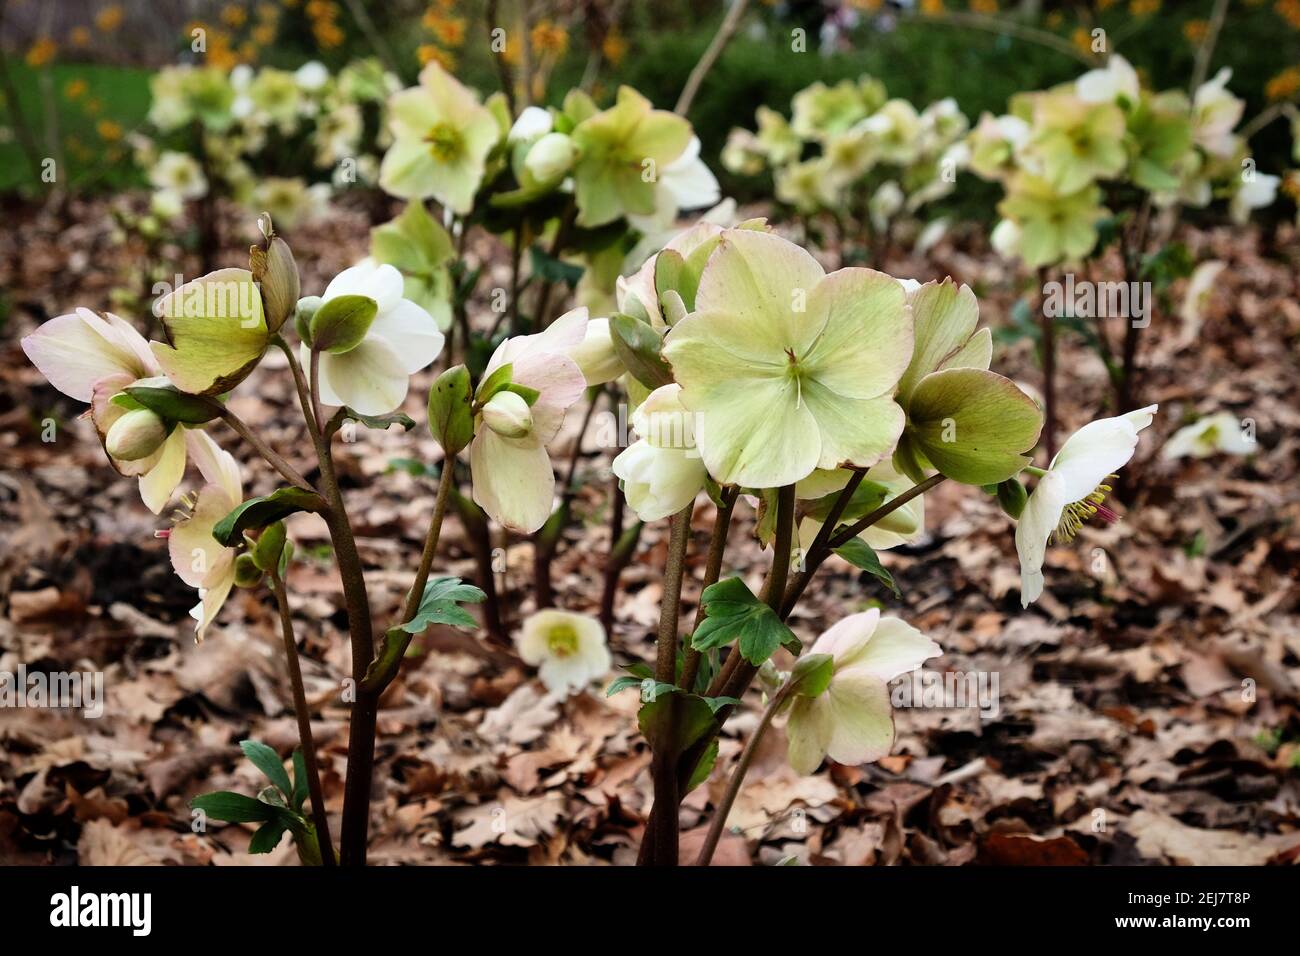 White Hellebores, 'Ice N Roses White' or lenten rose, in flower Stock Photo